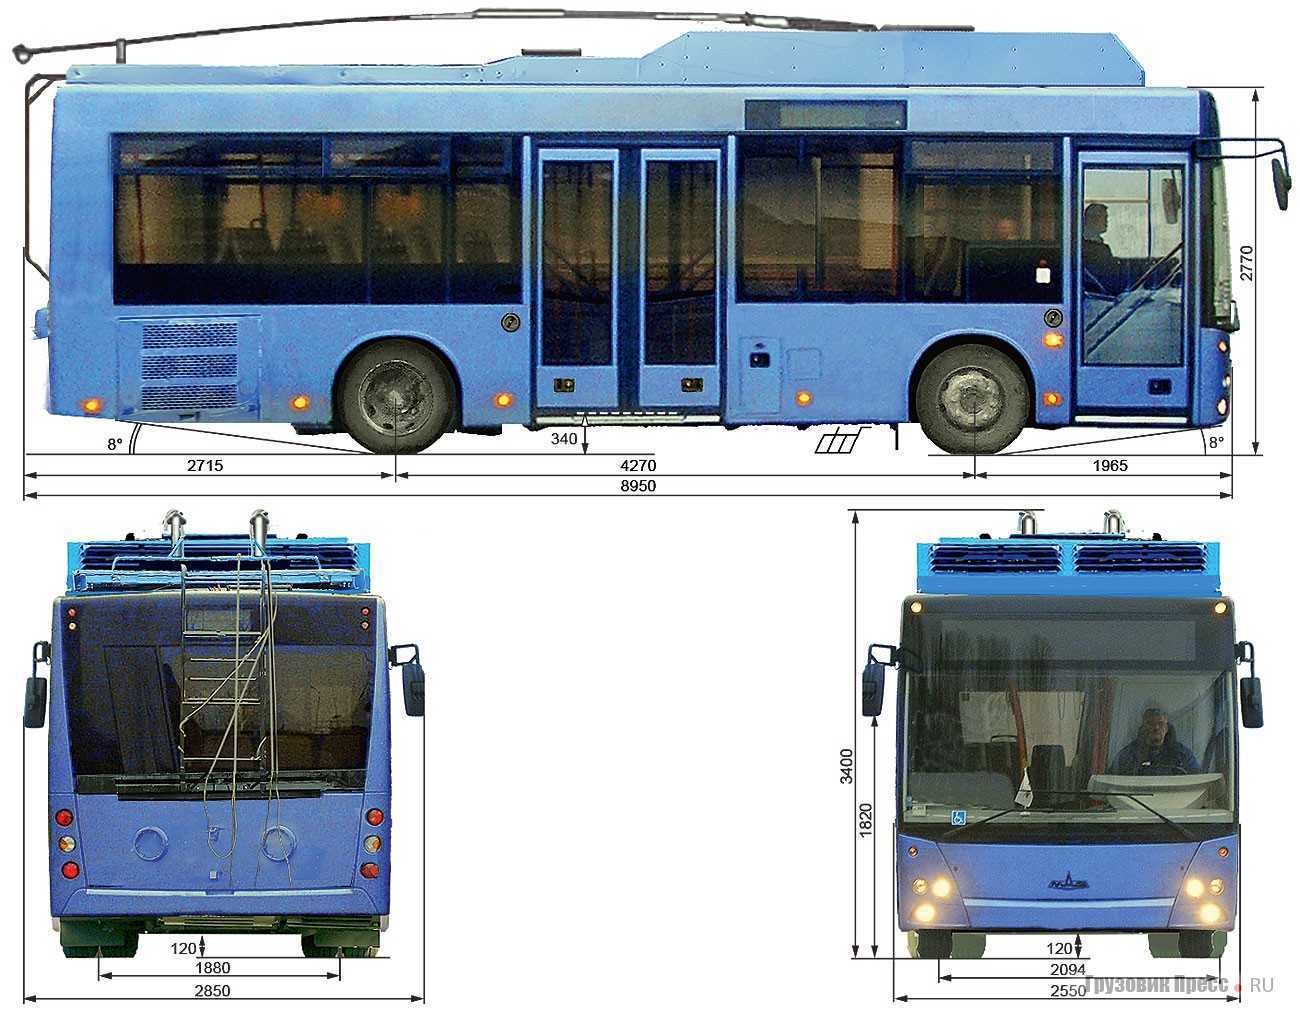 Характеристики и устройство автобуса полунизкопольного типа маз-206: разъясняем по полочкам